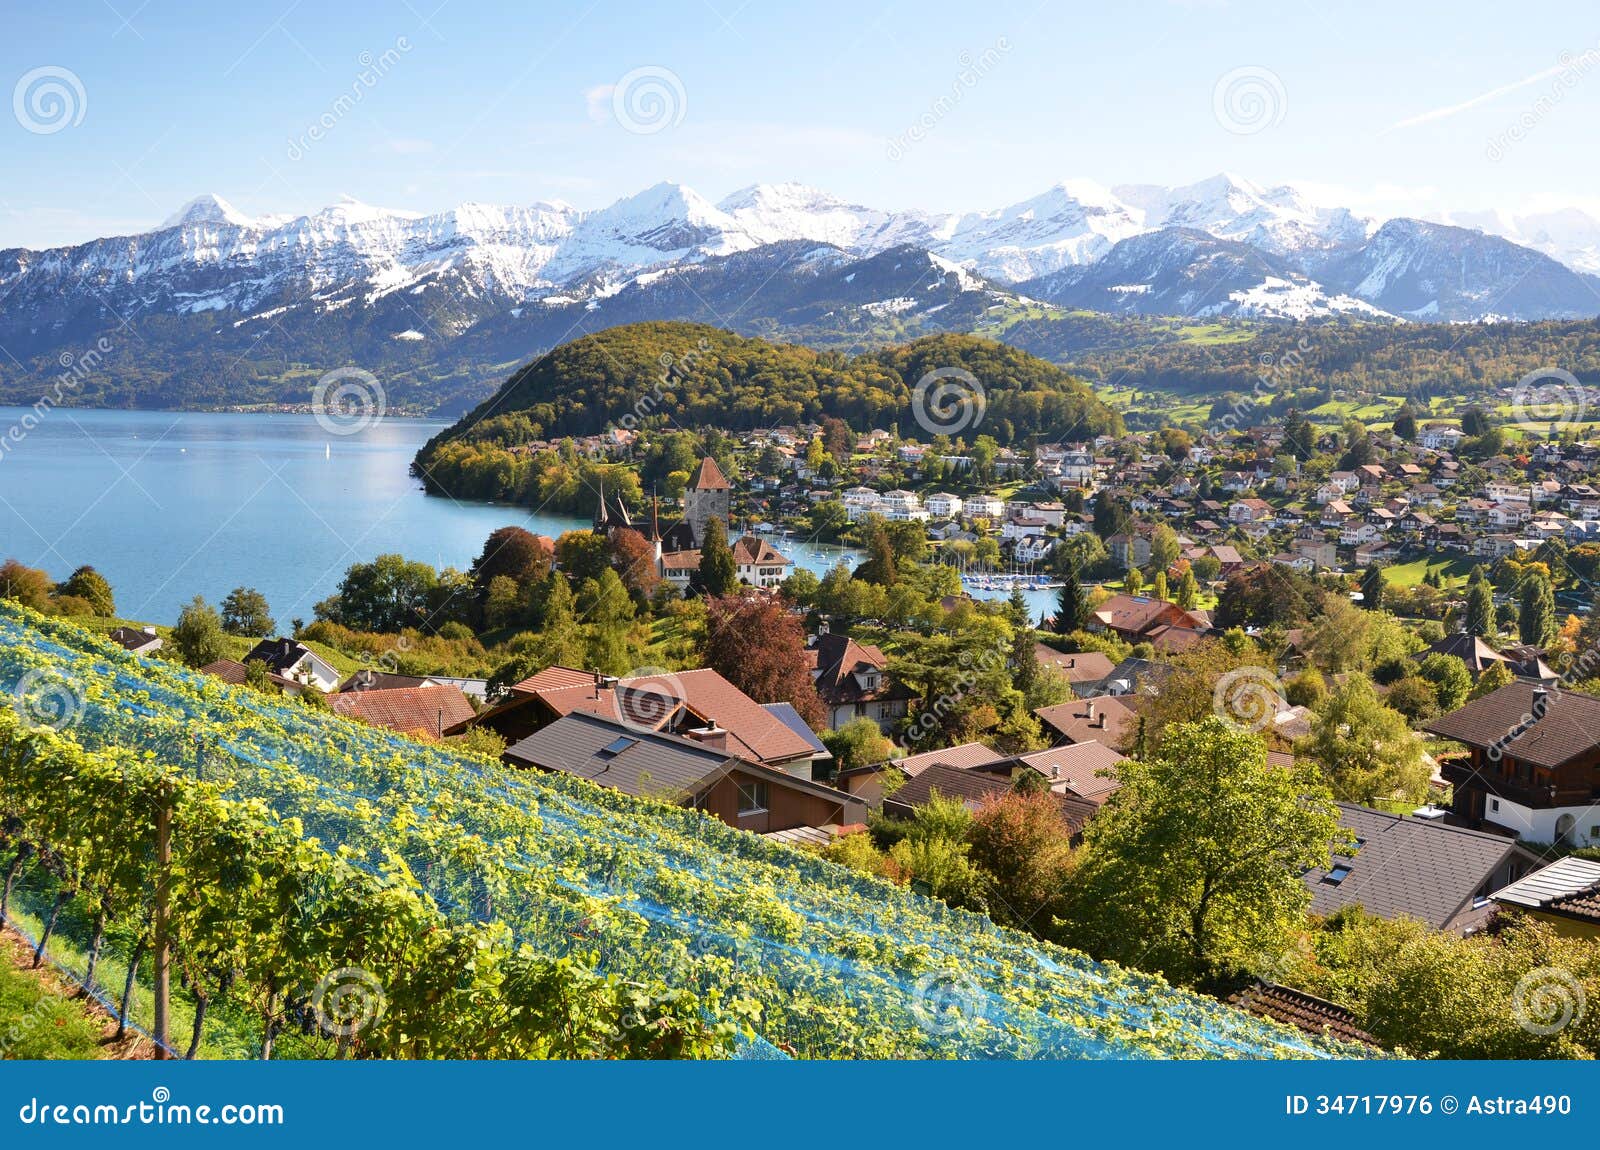 Spiez Switzerland Desktop Wallpaper